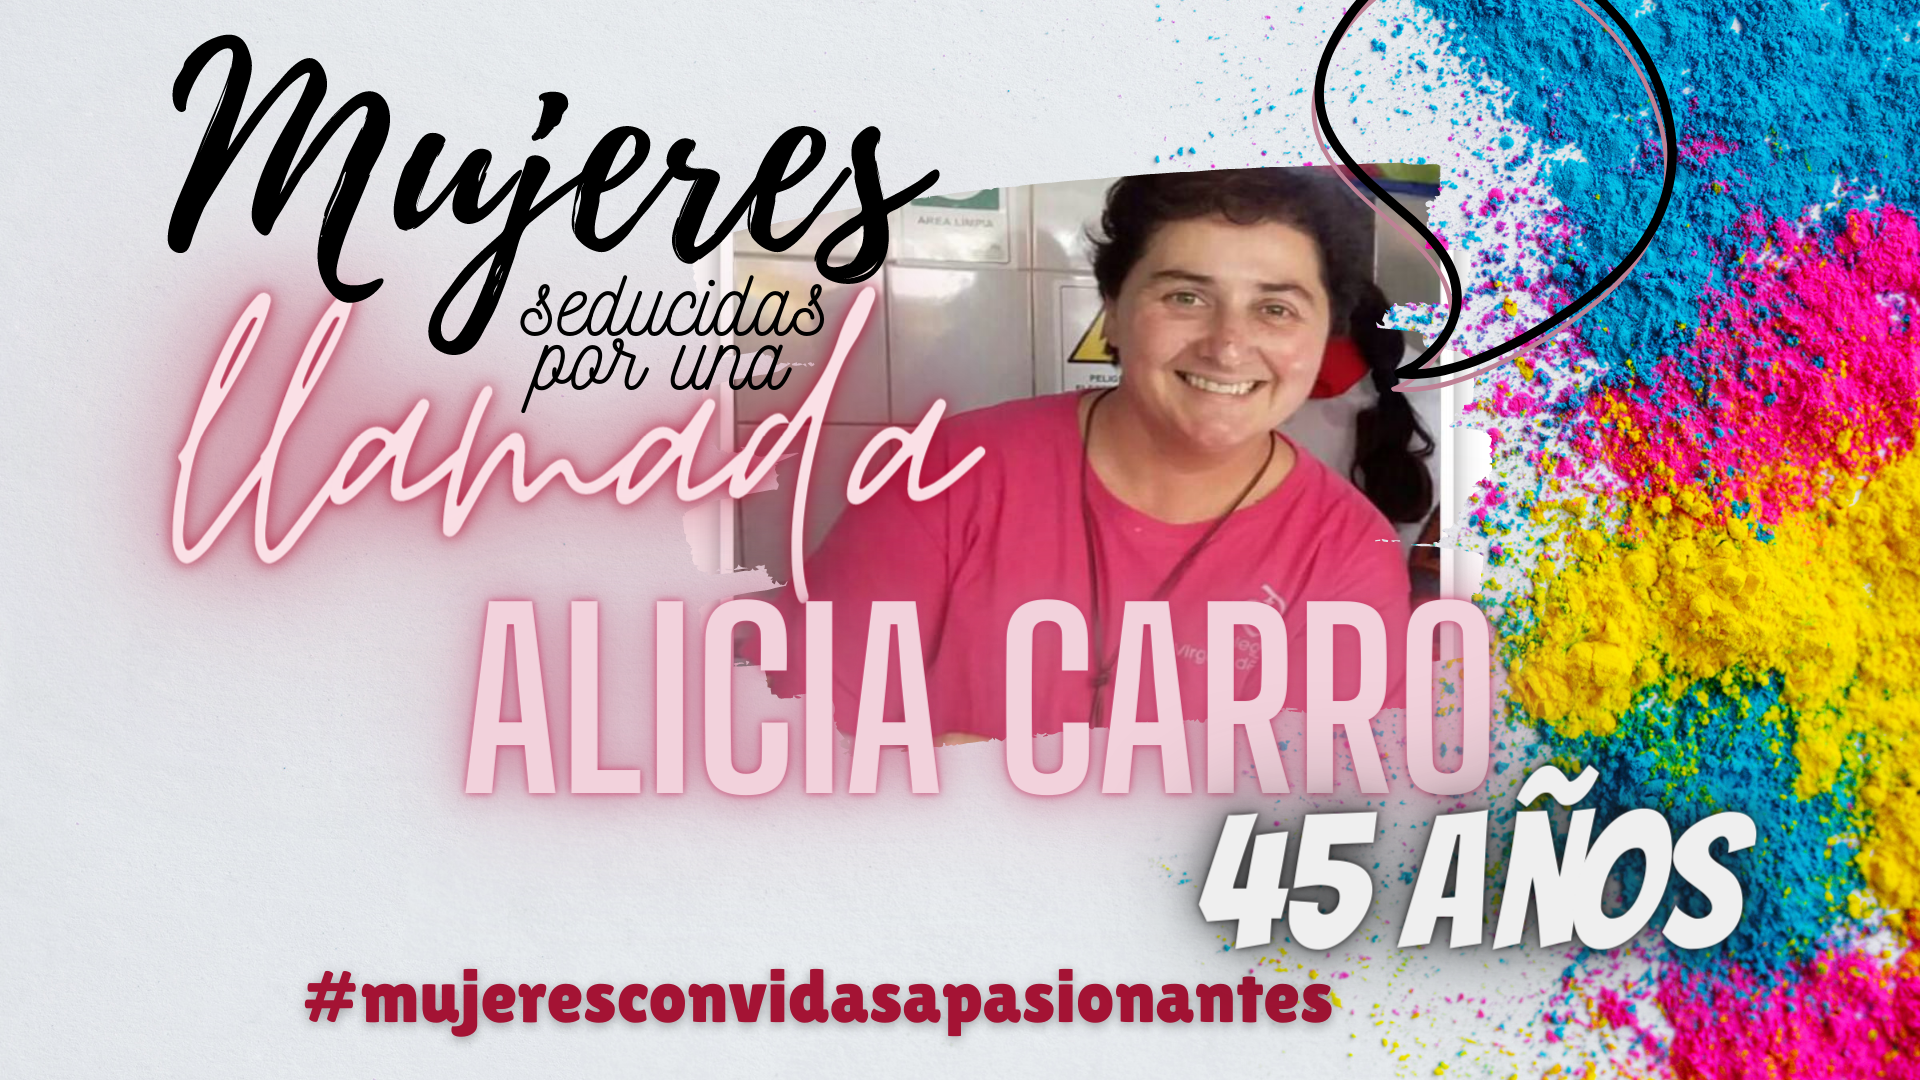 Mujeres con vidas apasionantes Alicia Carro